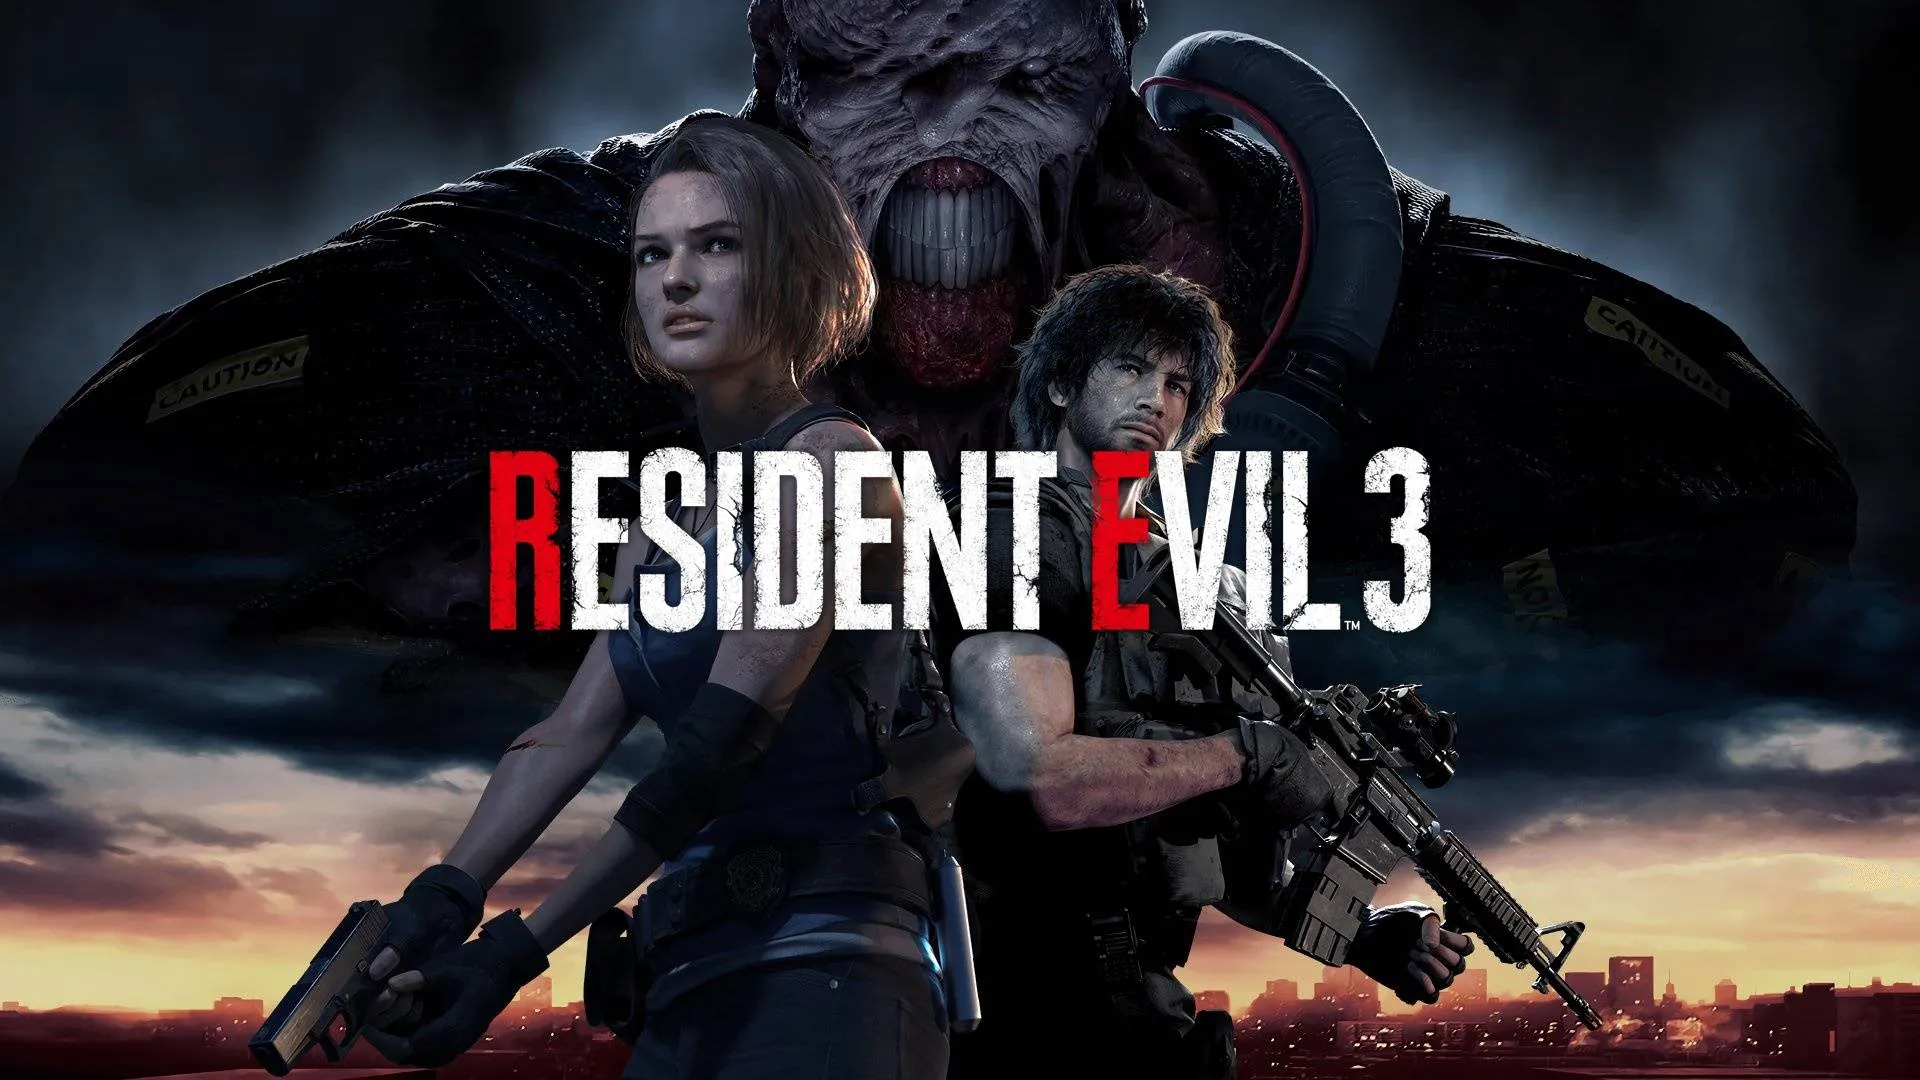 Скачать игру Resident Evil через торрент - бесплатно и без регистрации